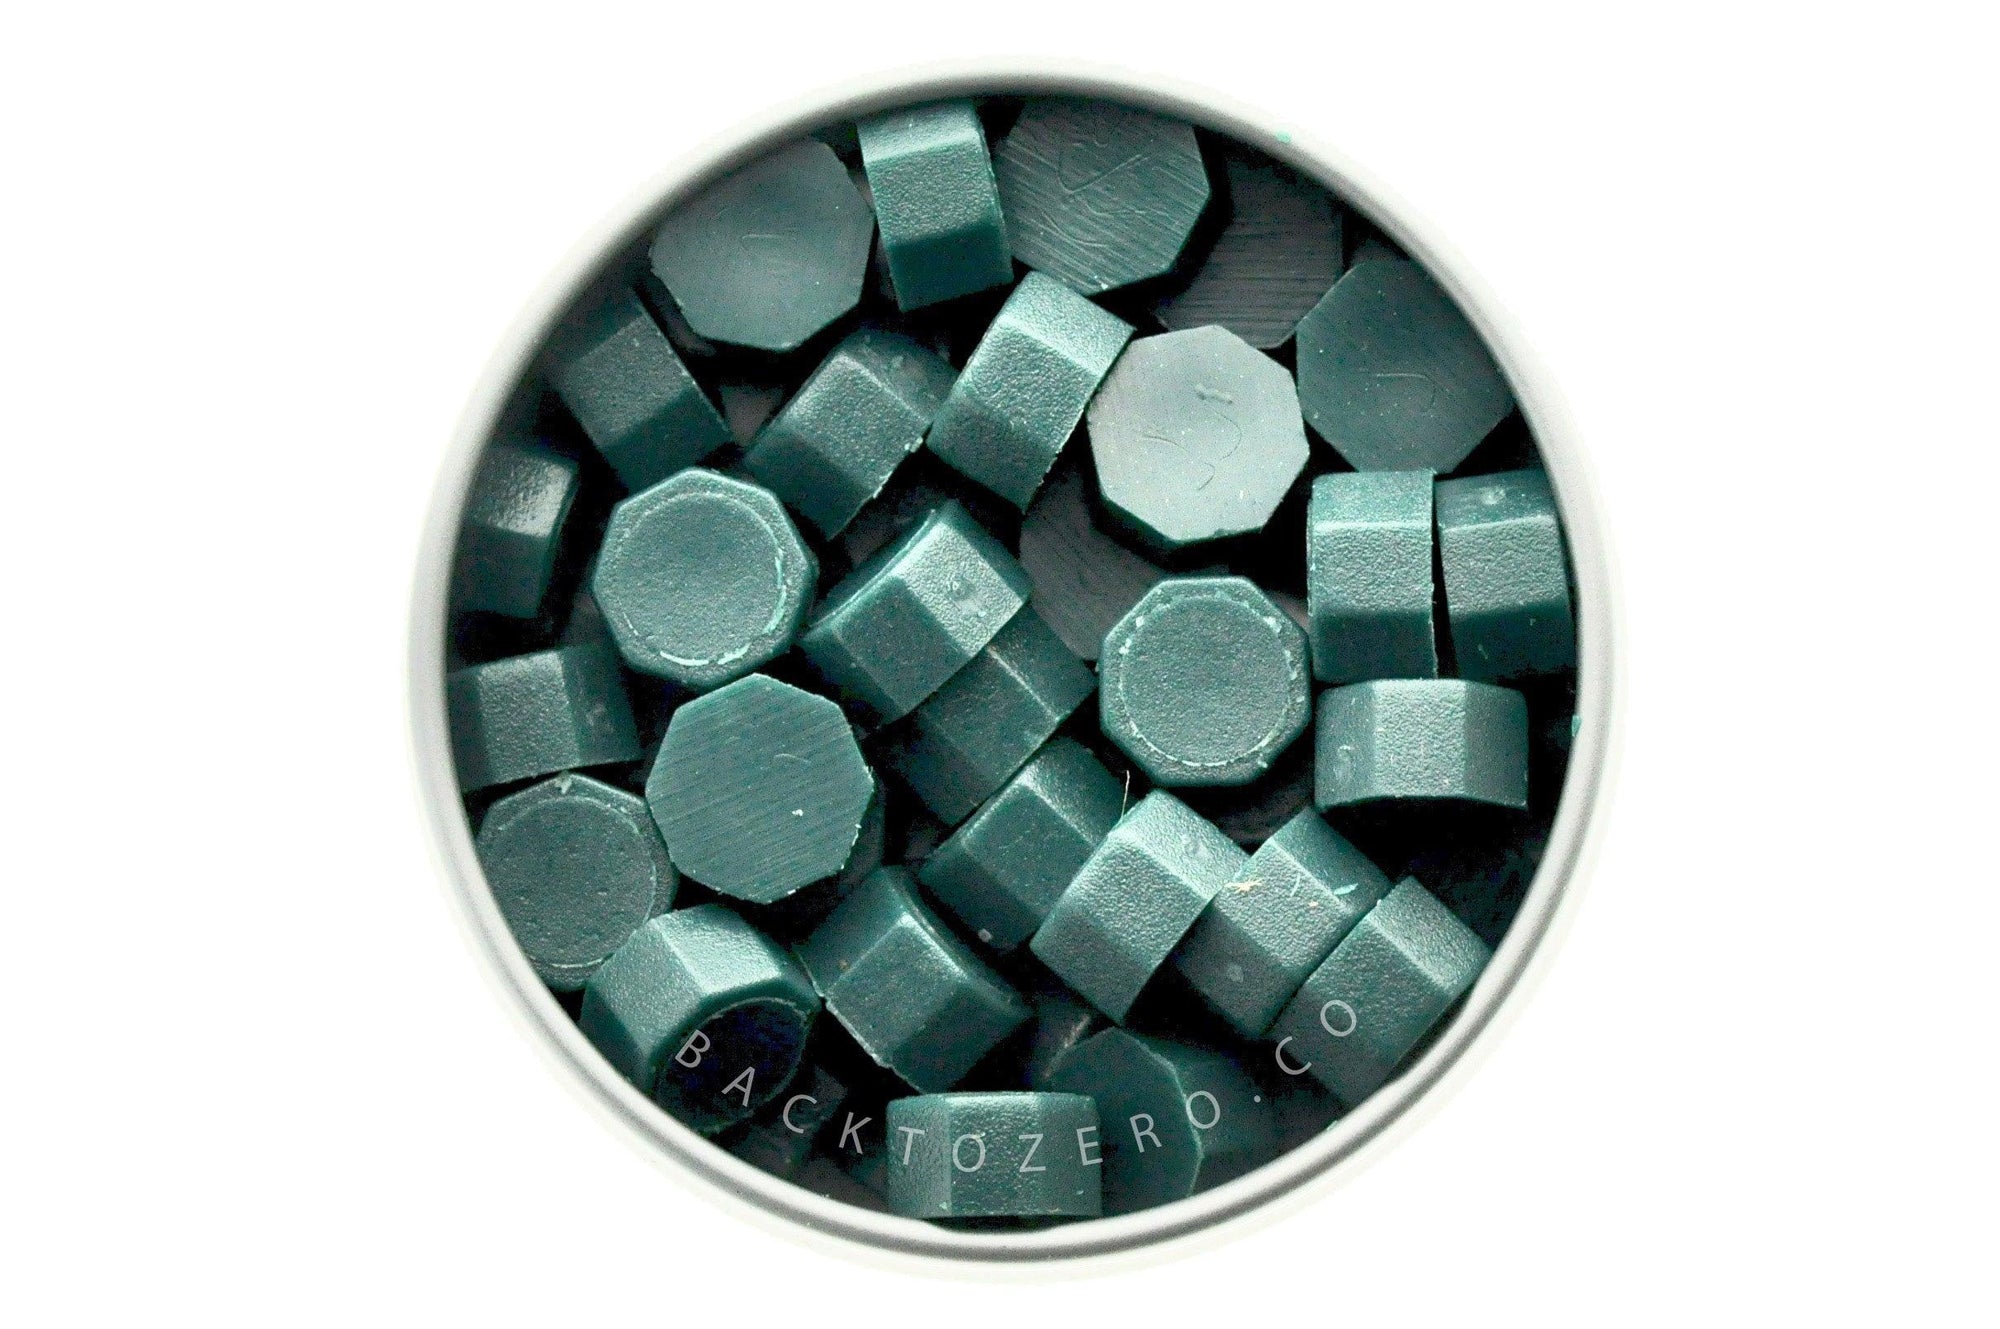 Eden Octagon Sealing Wax Beads - Backtozero B20 - green, octagon bead, sealing wax, tin, Wax Beads